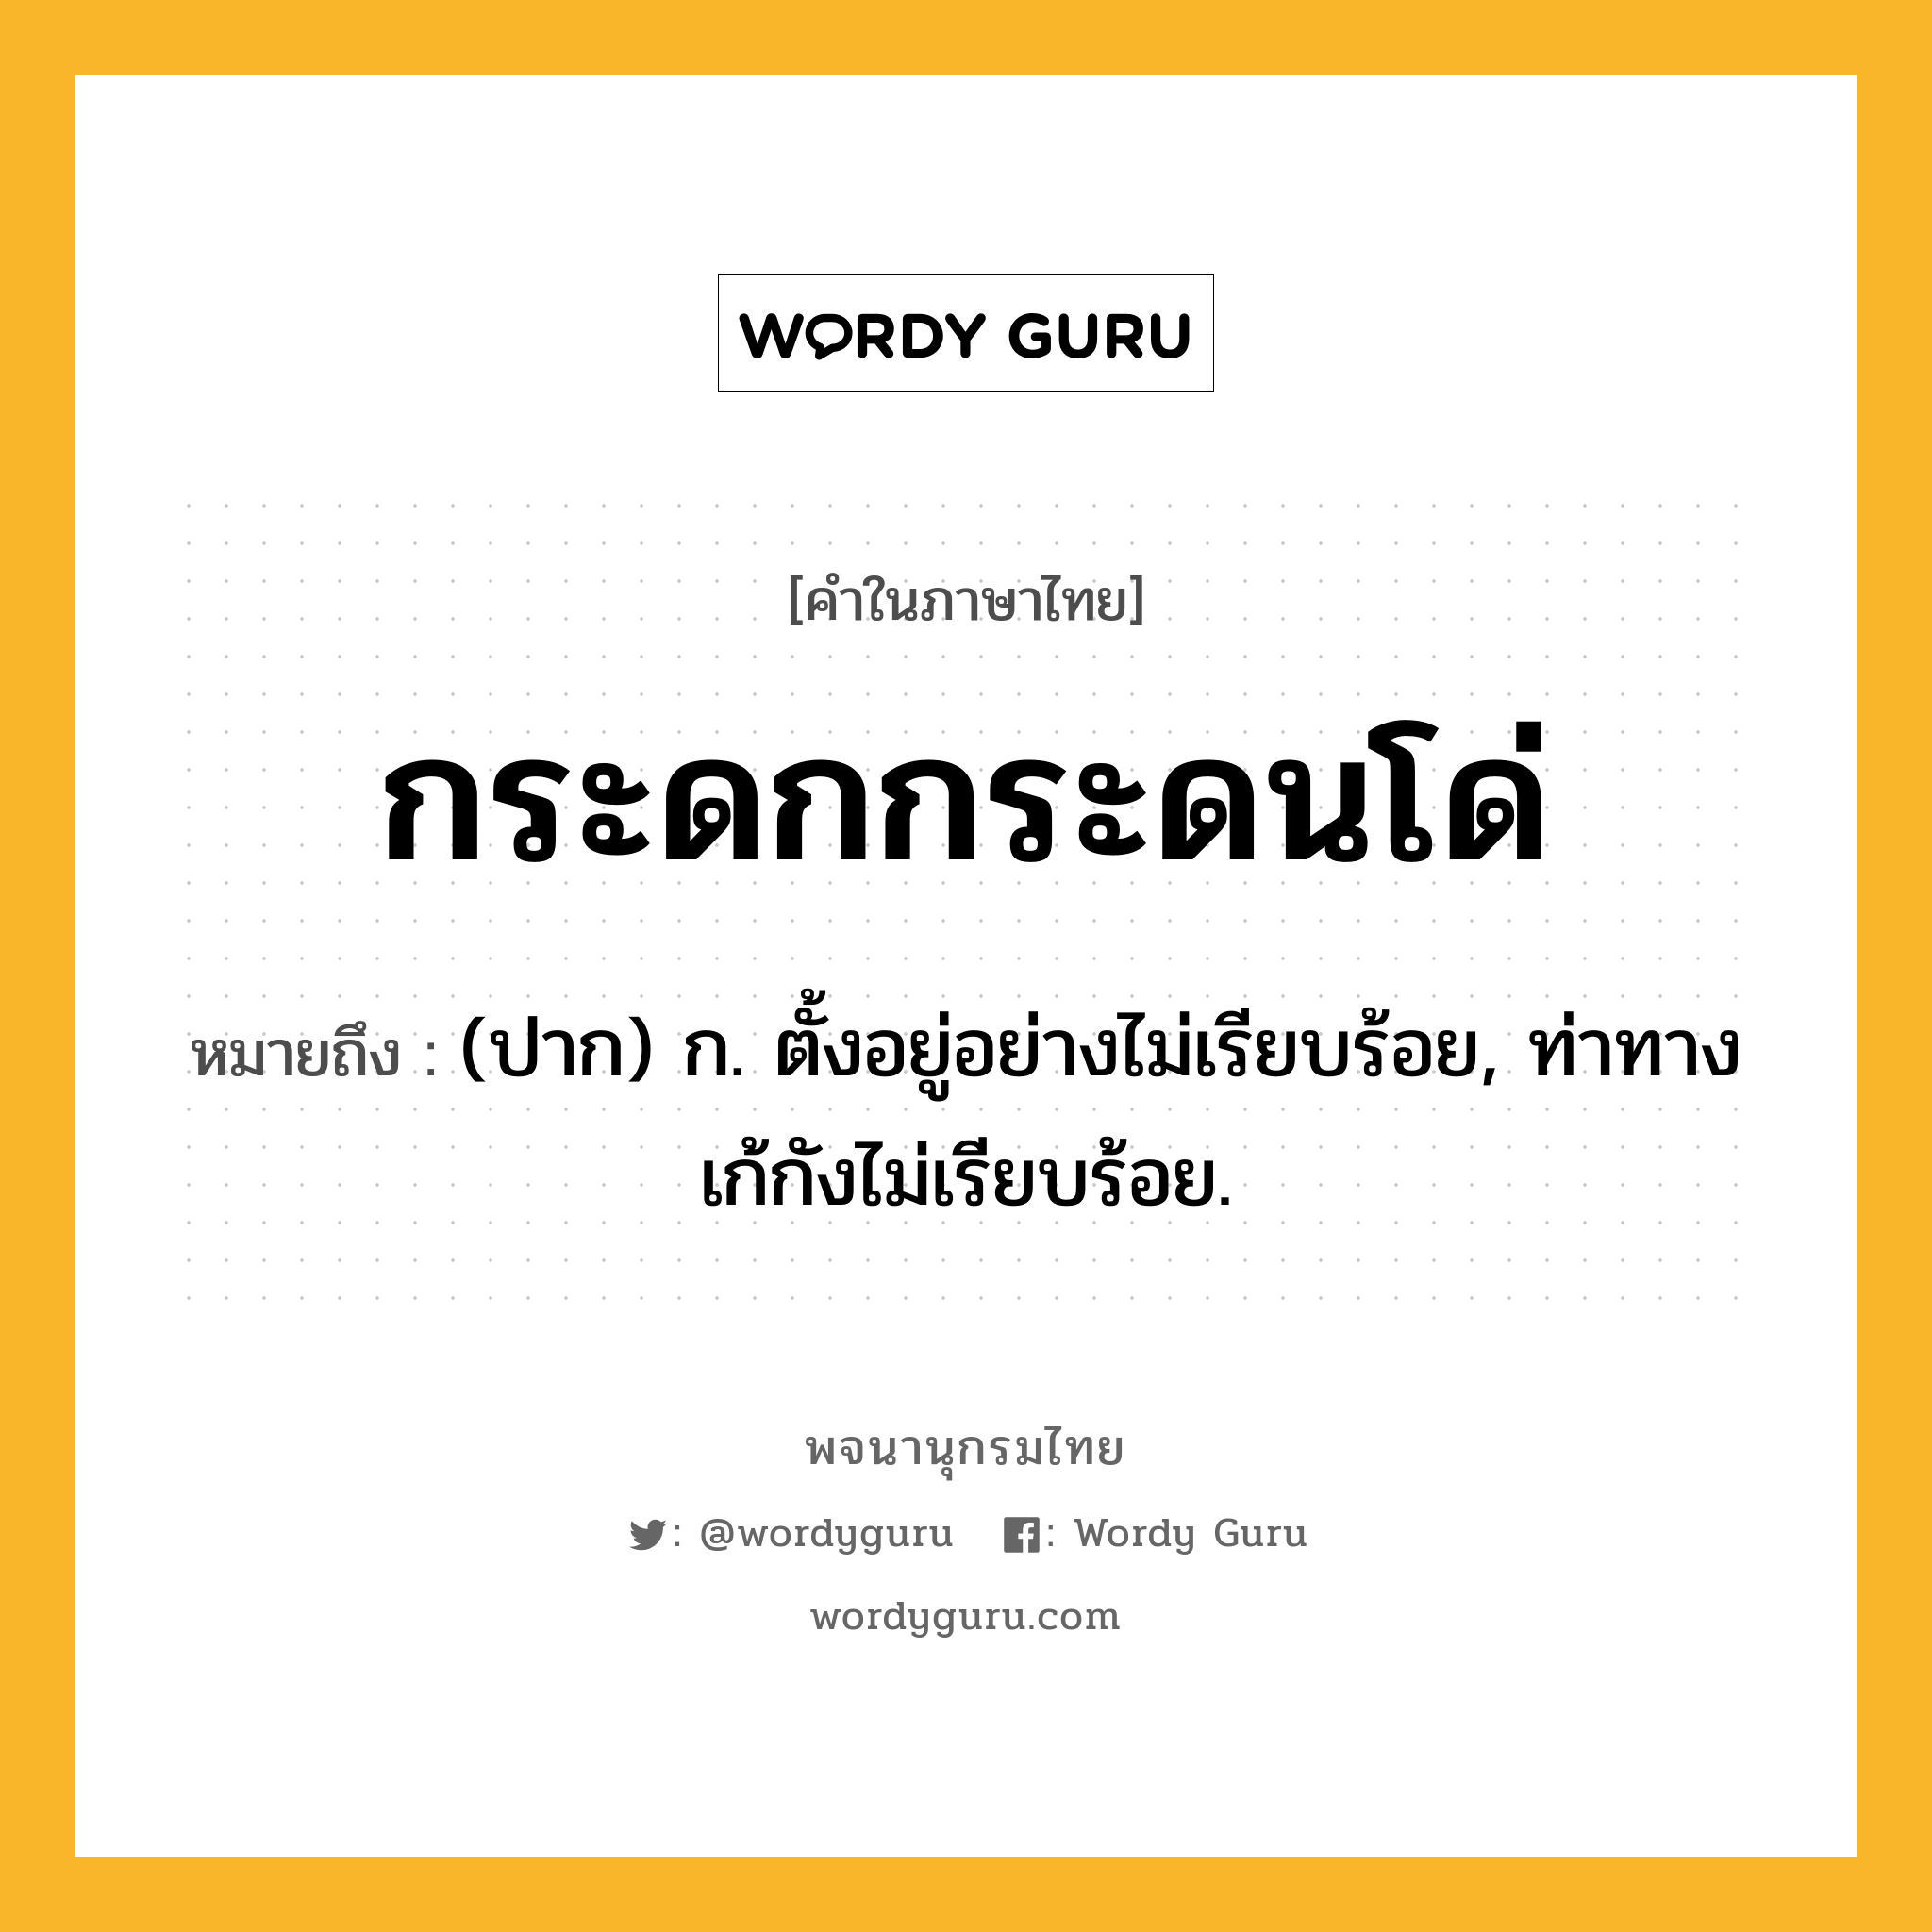 กระดกกระดนโด่ หมายถึงอะไร?, คำในภาษาไทย กระดกกระดนโด่ หมายถึง (ปาก) ก. ตั้งอยู่อย่างไม่เรียบร้อย, ท่าทางเก้กังไม่เรียบร้อย.